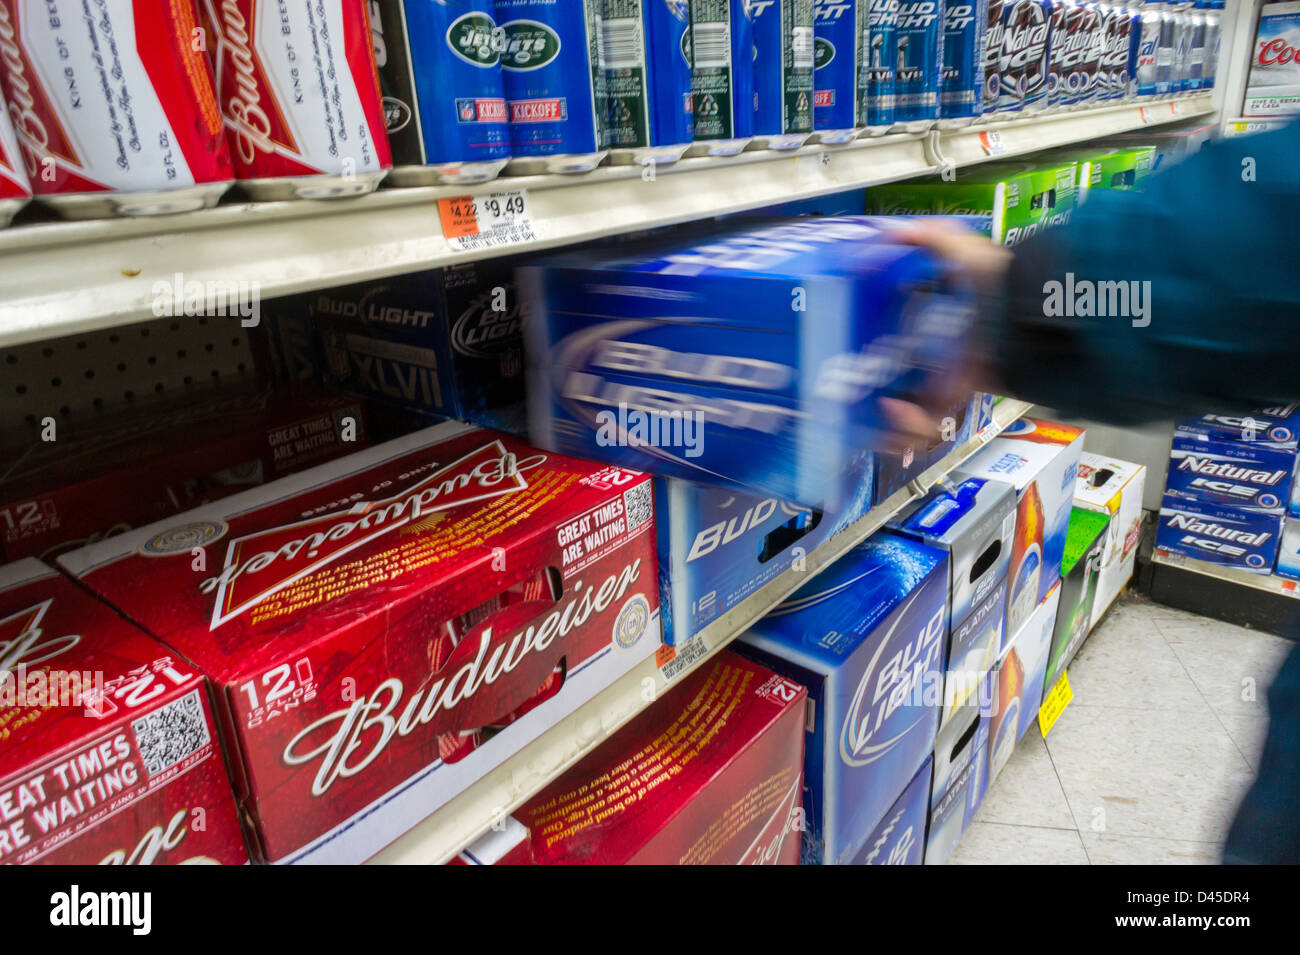 Un nouveau client s'empare de canettes de bière Budweiser par le brasseur Anheuser-Busch InBev dans un supermarché de New York Banque D'Images